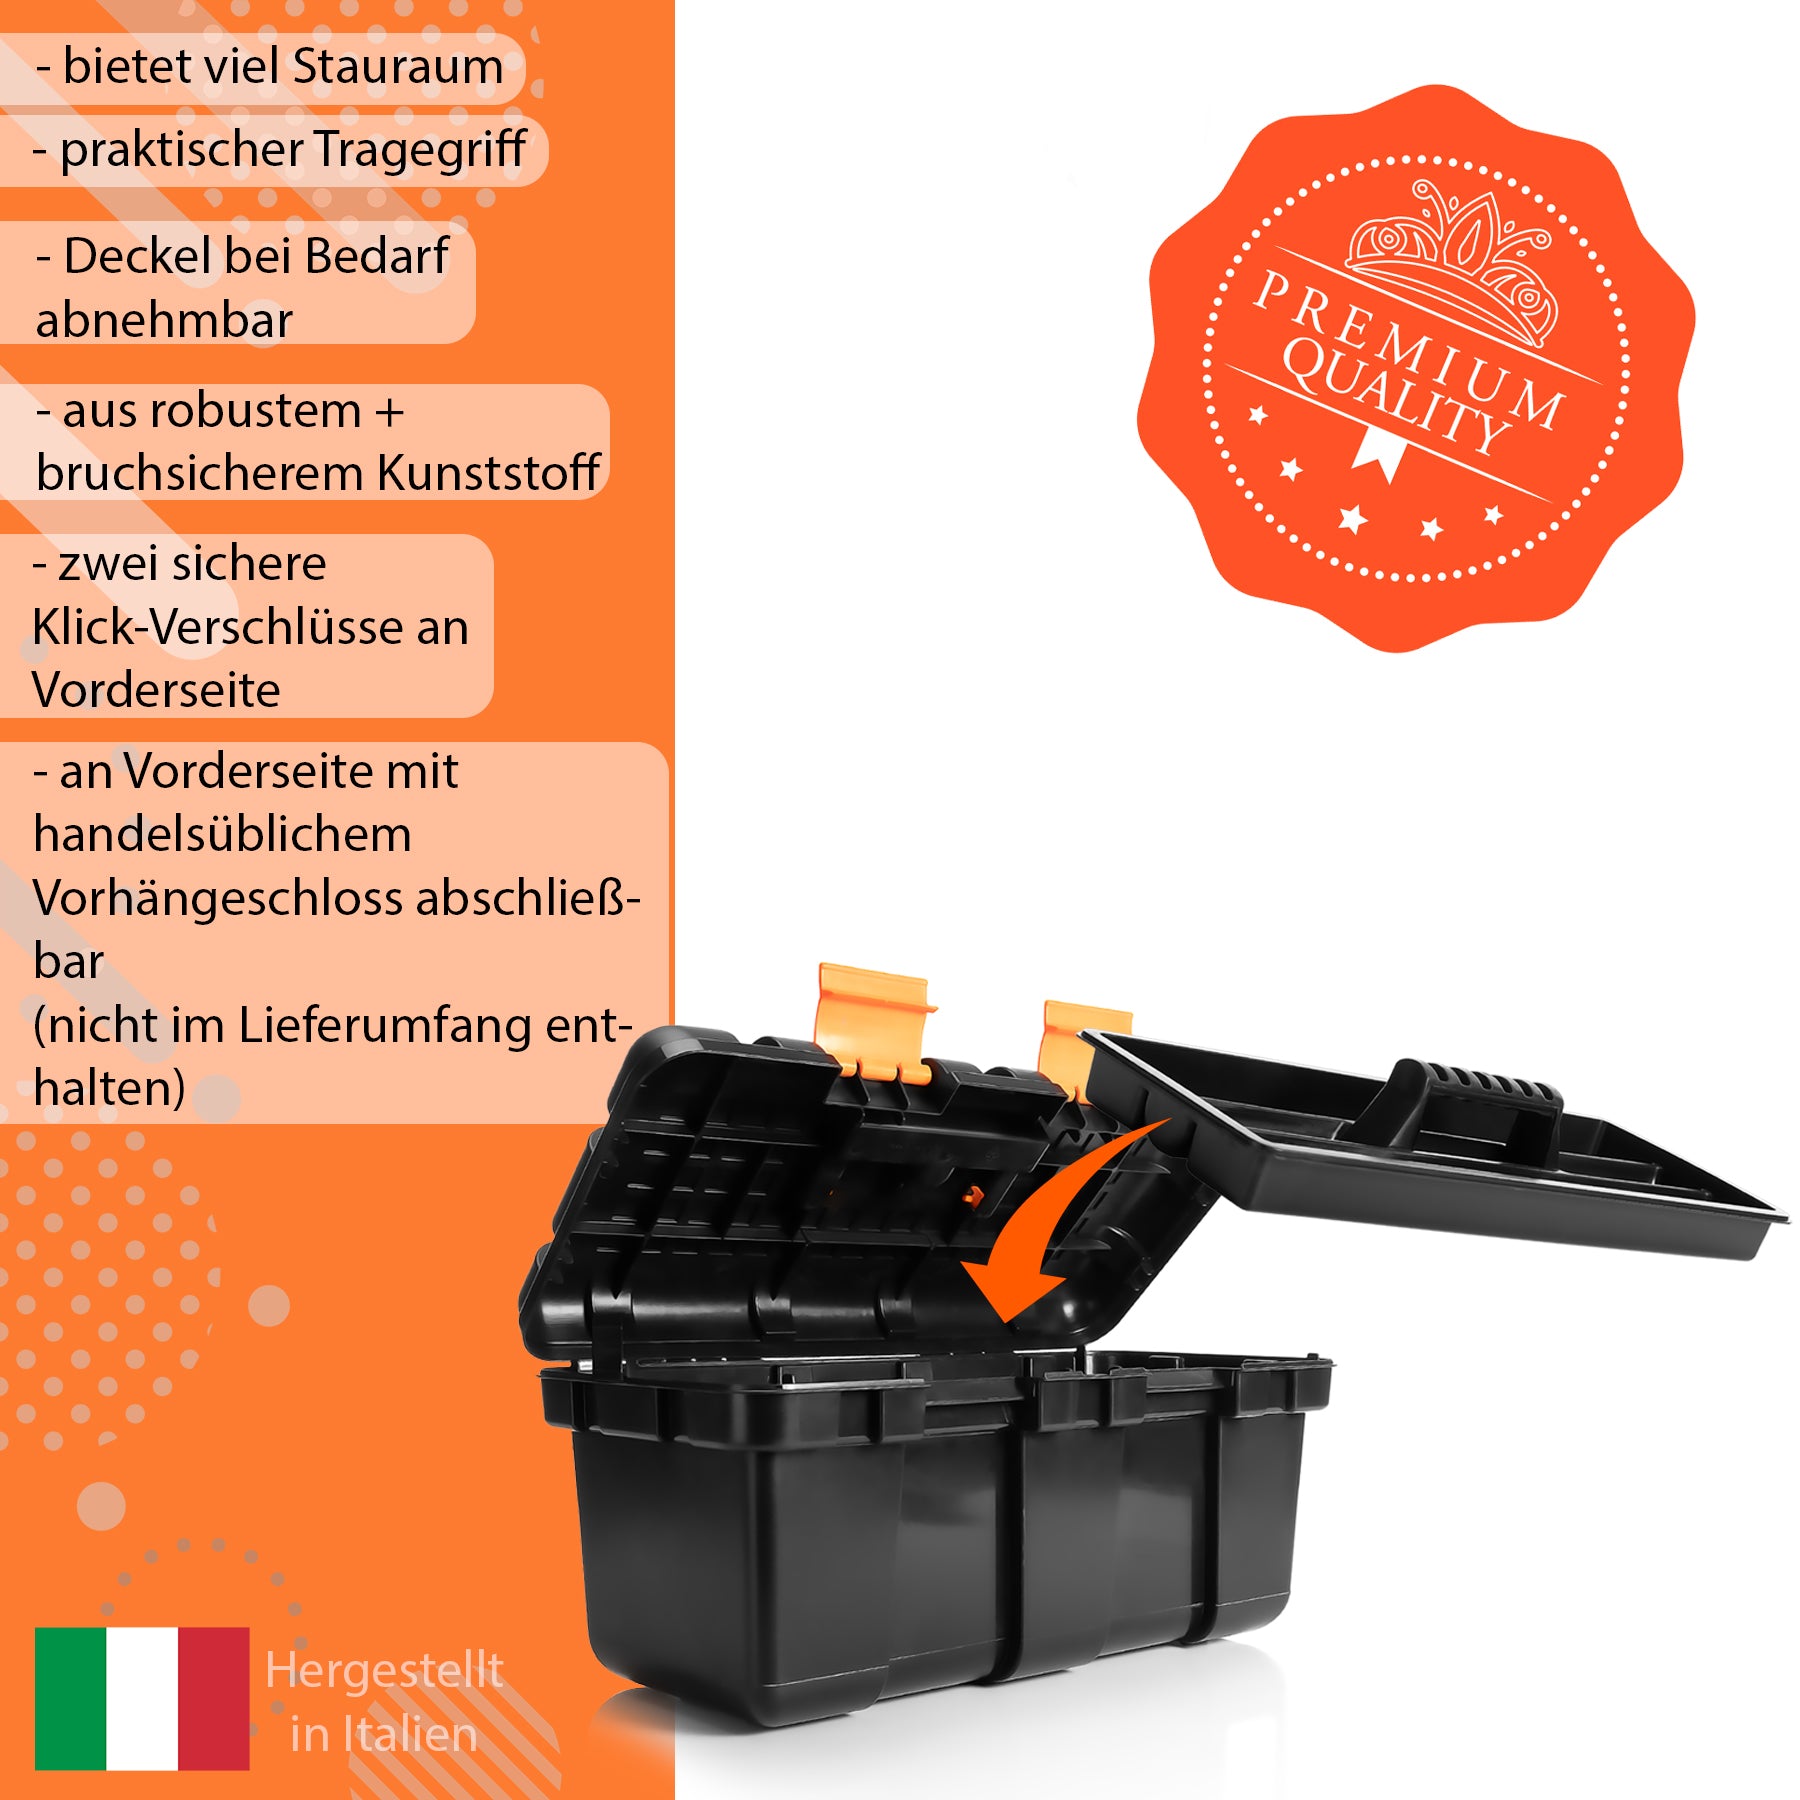 Werkzeugkoffer groß aus Hart-Kunststoff - 50x25x23,5cm - Werkzeugkiste mit herausnehmbarer Innenablage - Toolbox groß Werkzeugkasten Werkzeug Box für Heim- & Handwerker - Made in EU